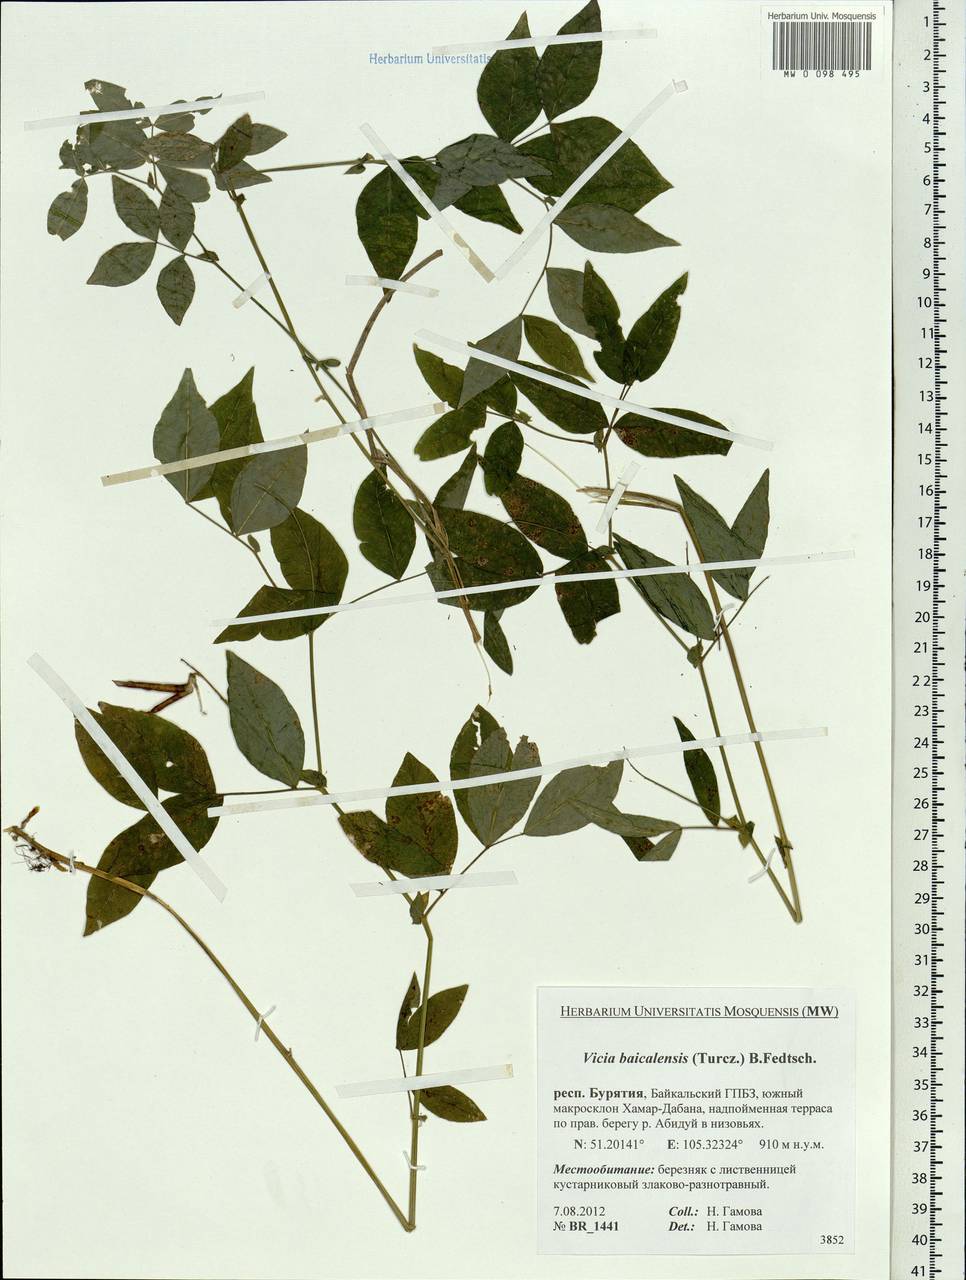 Vicia ramuliflora (Maxim.)Ohwi, Siberia, Baikal & Transbaikal region (S4) (Russia)